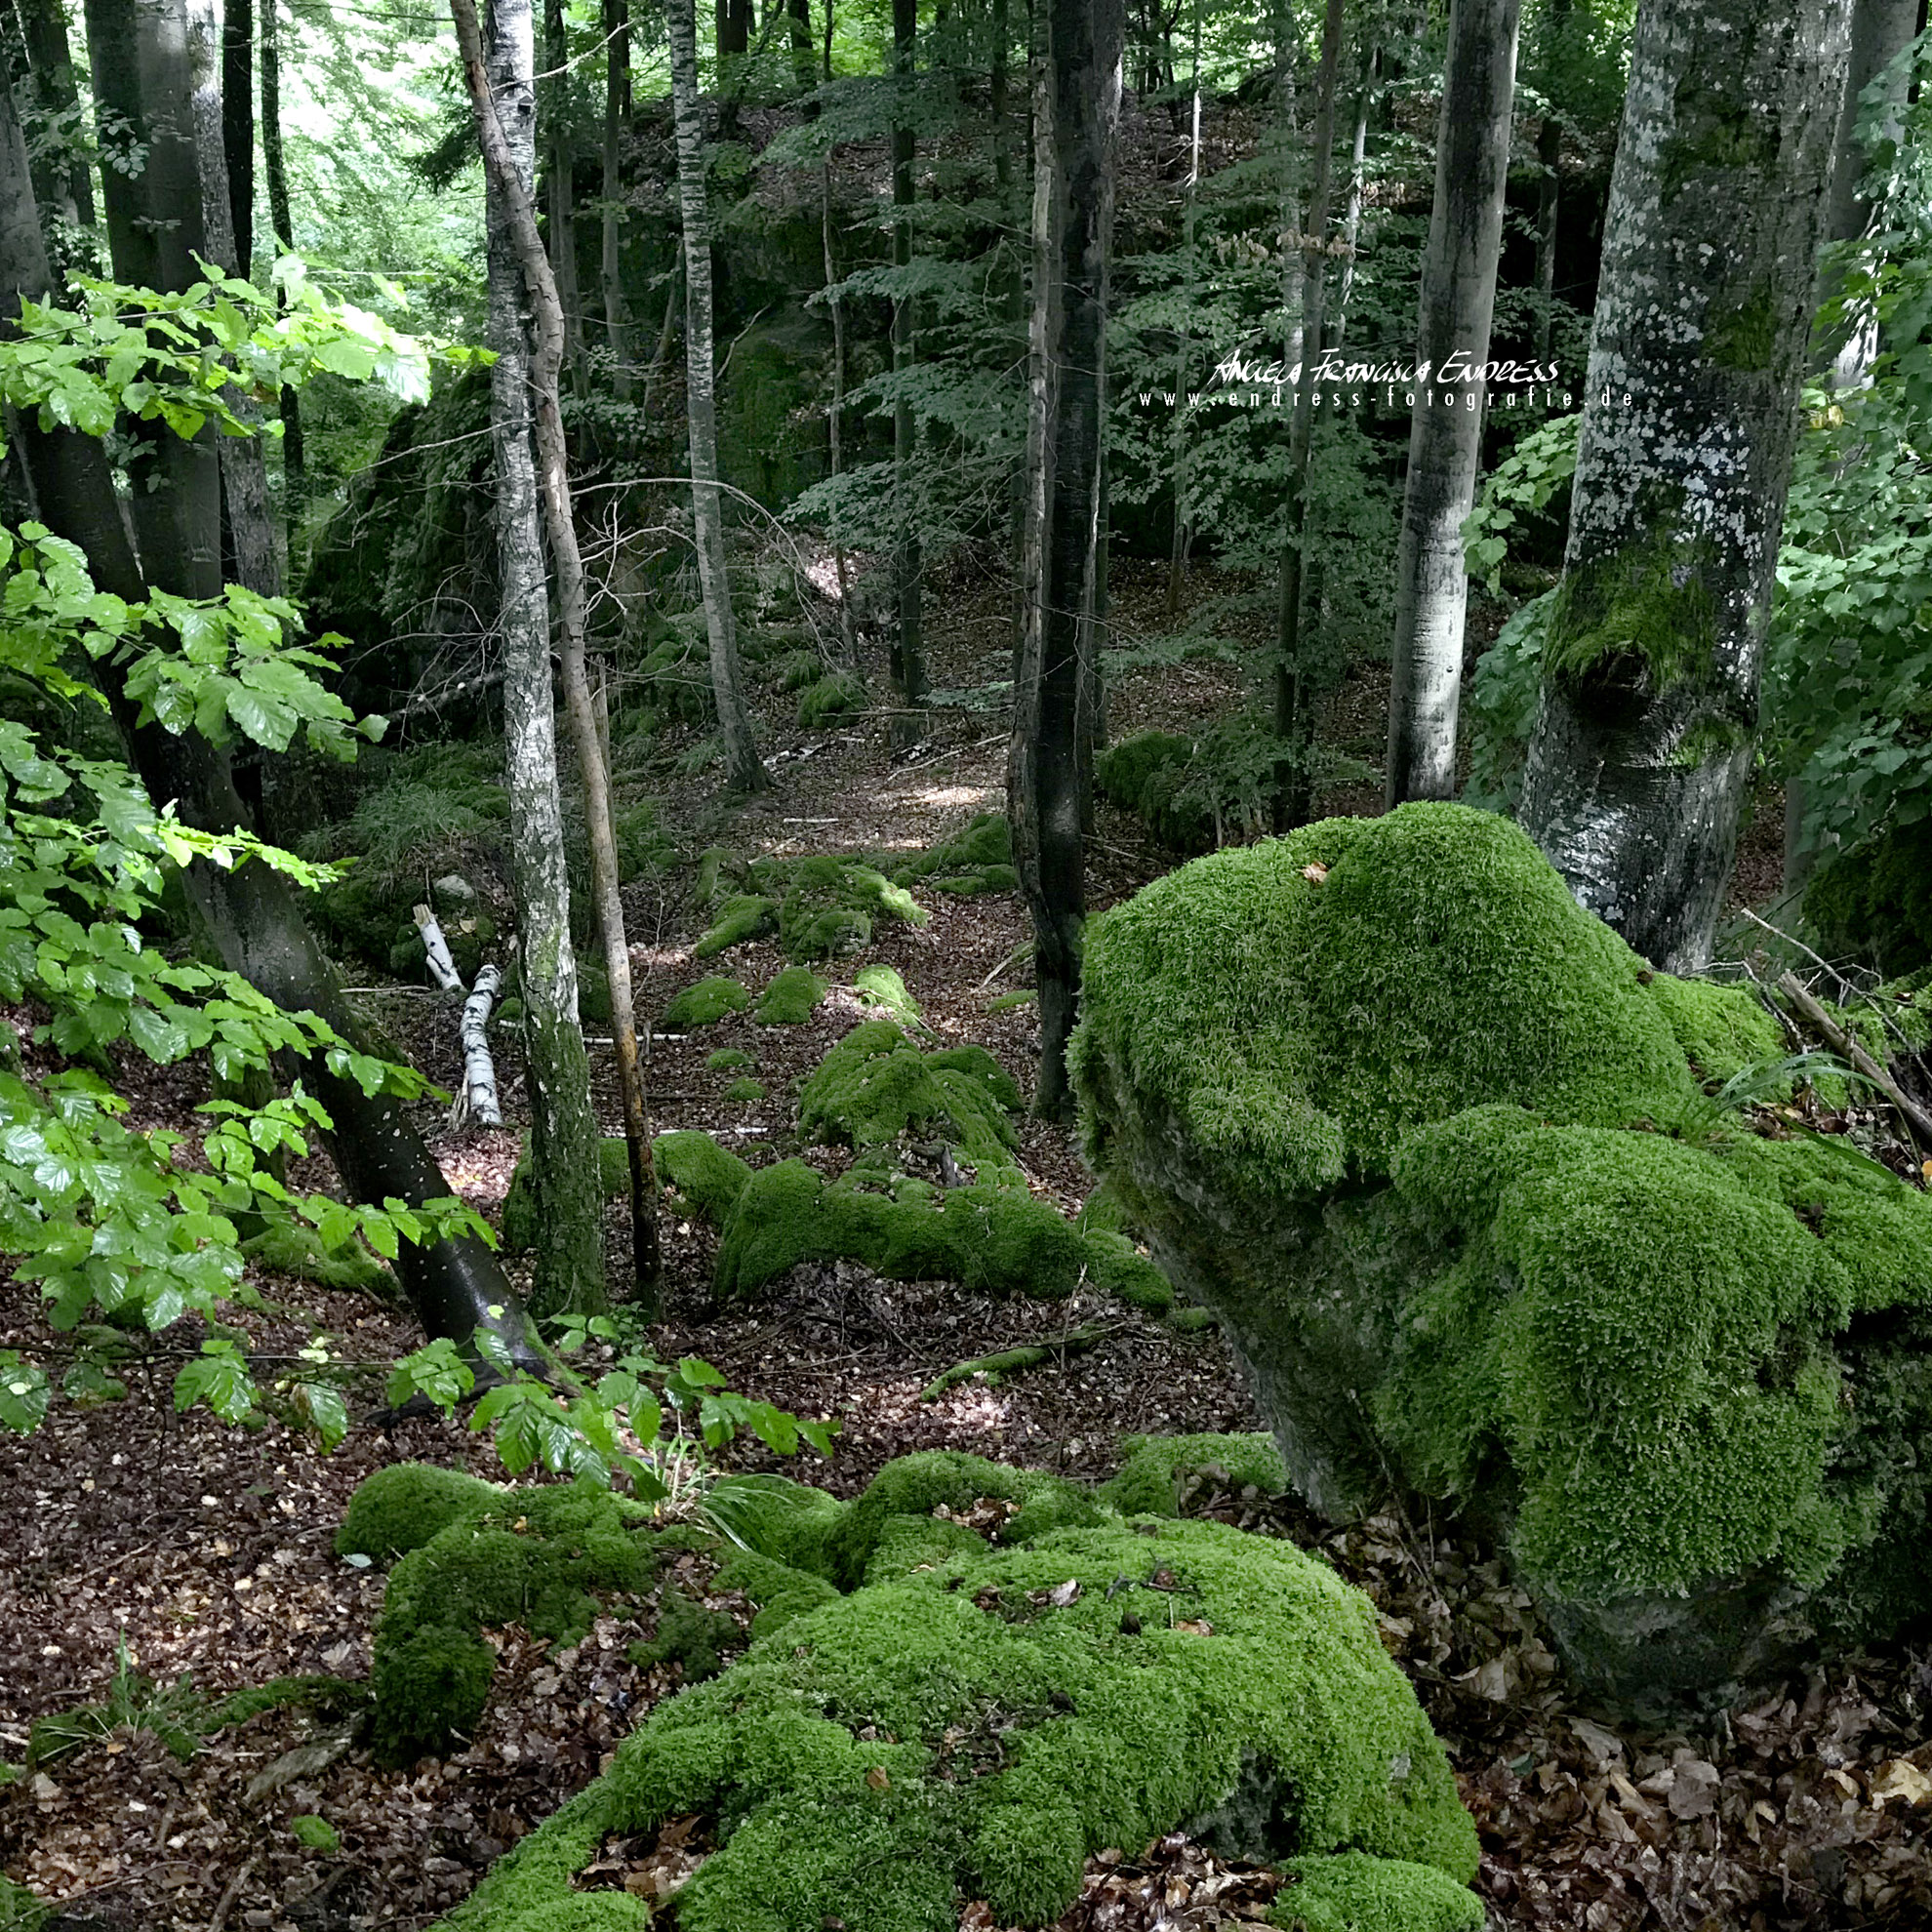 bemooste Felsen und Schlucht im Wald